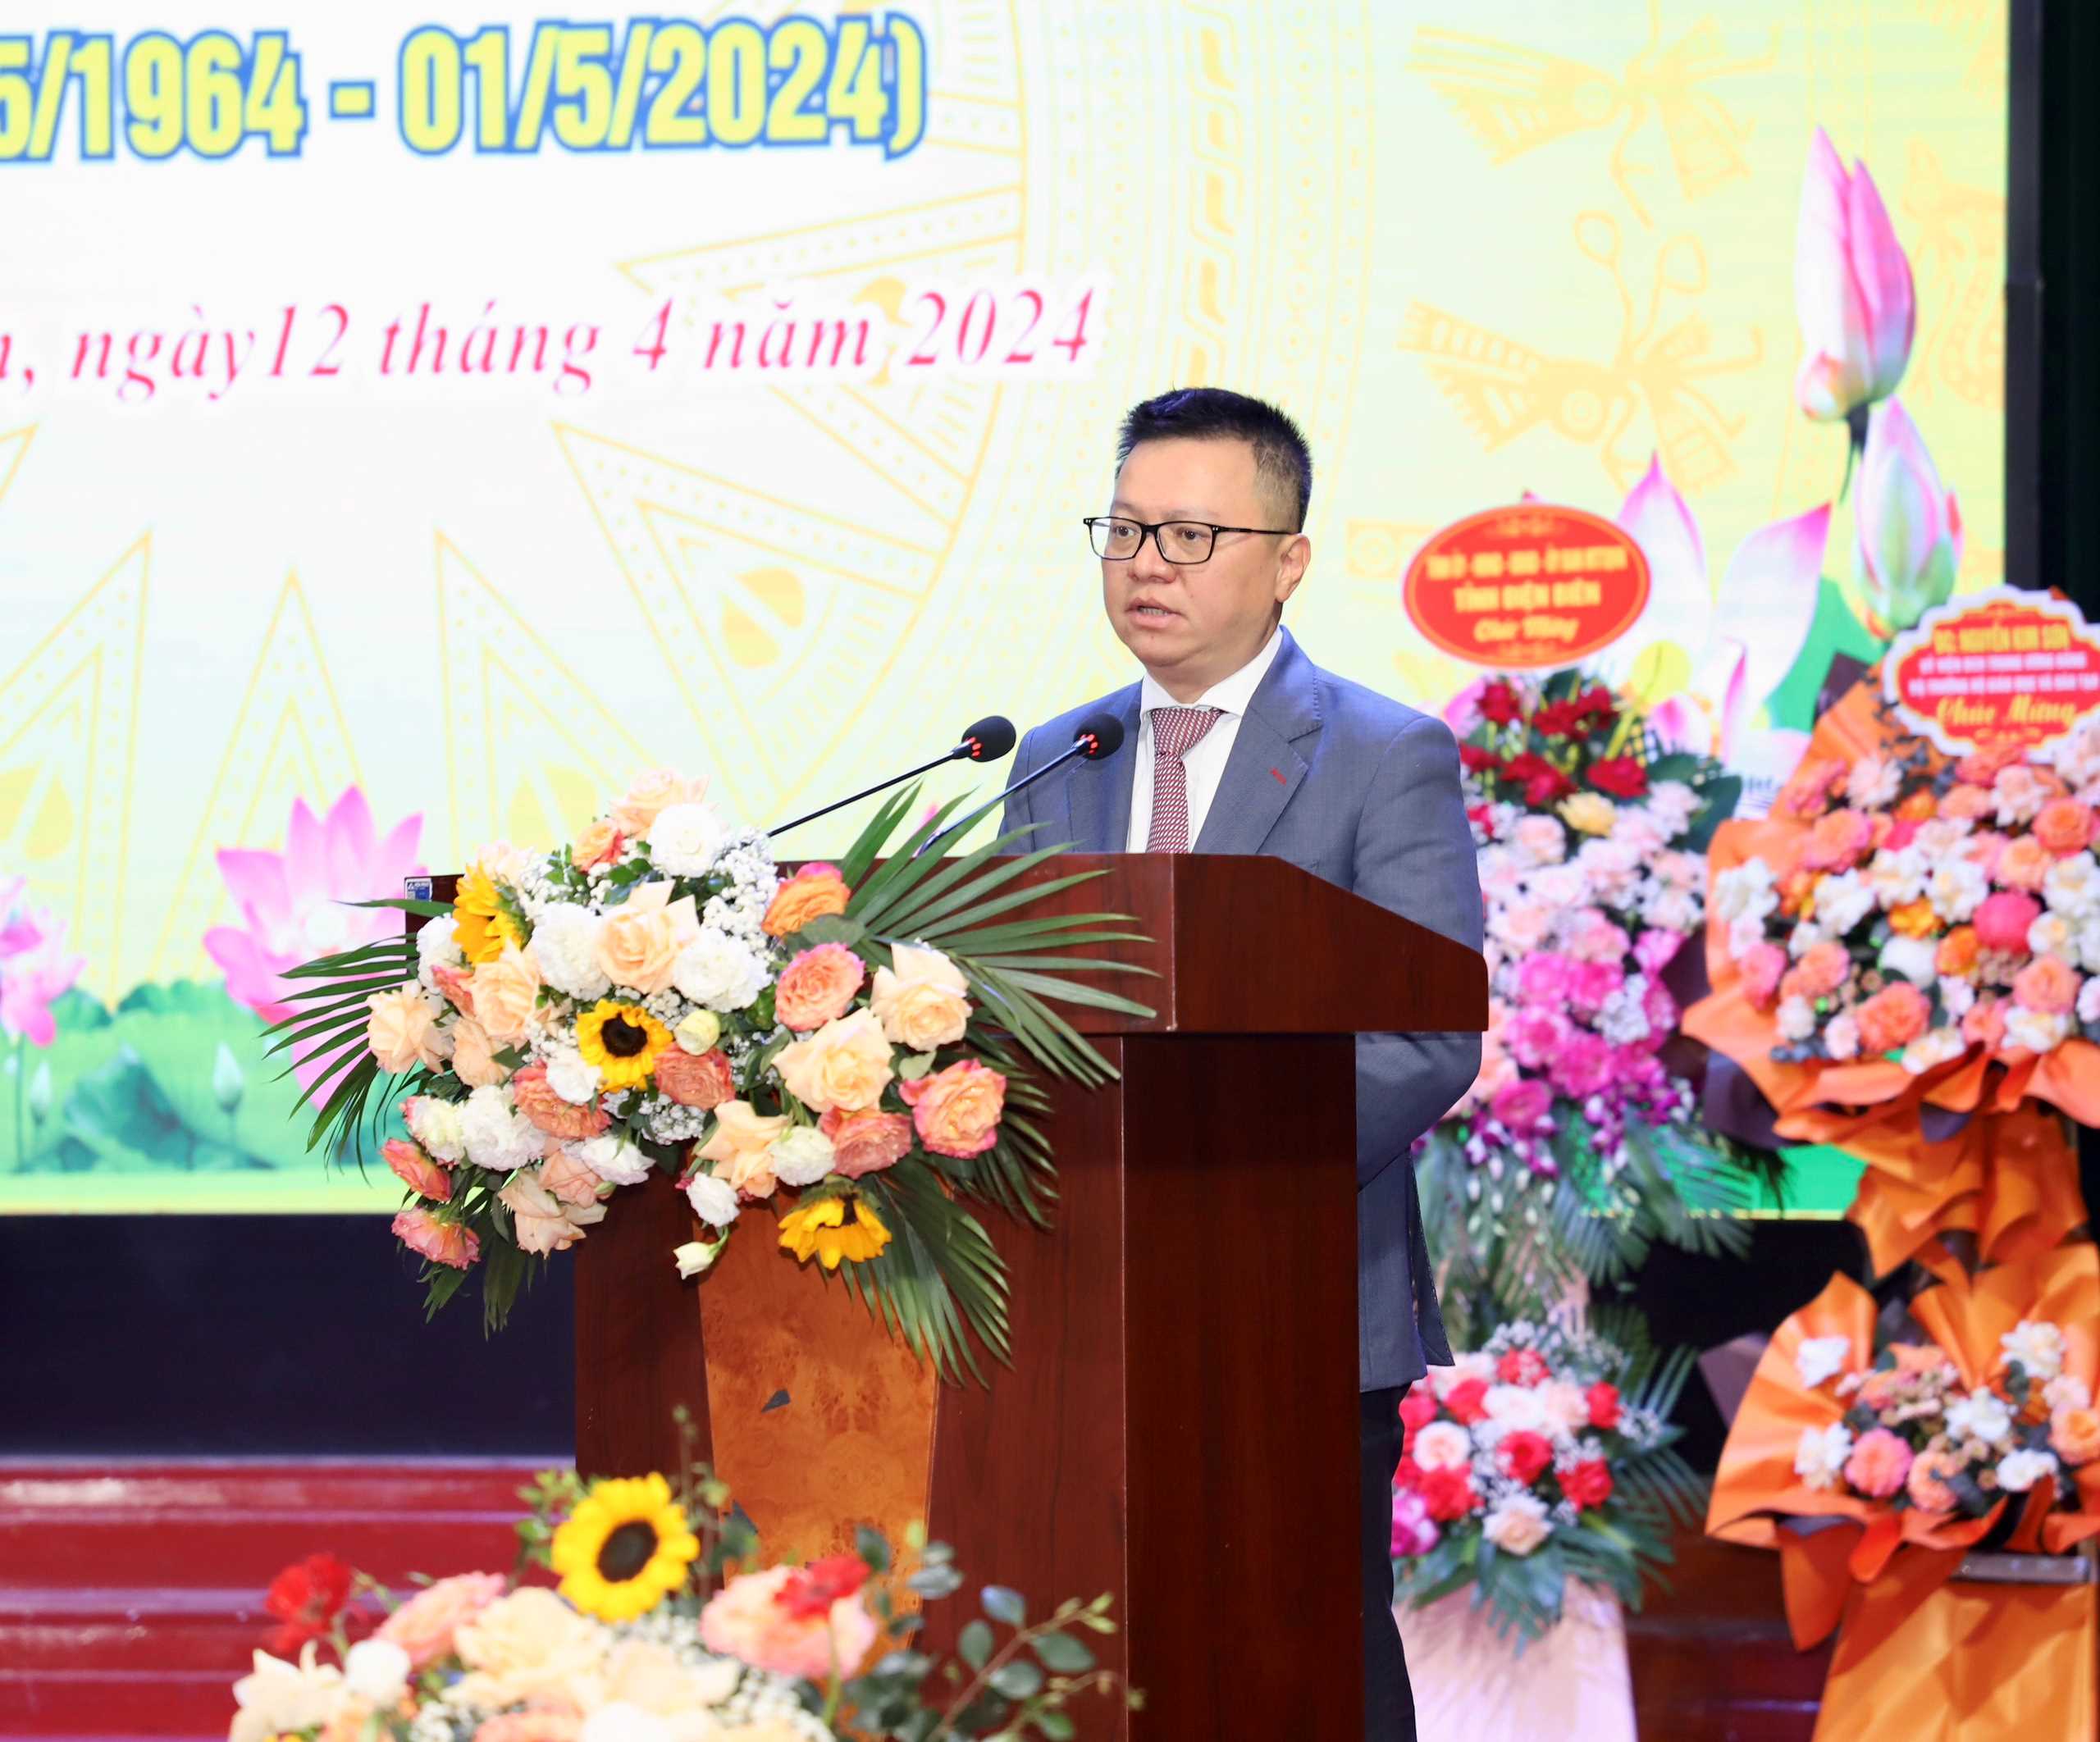 Đồng chí Lê Quốc Minh, Ủy viên Trung ương Đảng, Phó Trưởng Ban Tuyên giáo Trung ương, Tổng Biên tập Báo Nhân dân phát biểu tại lễ kỷ niệm.